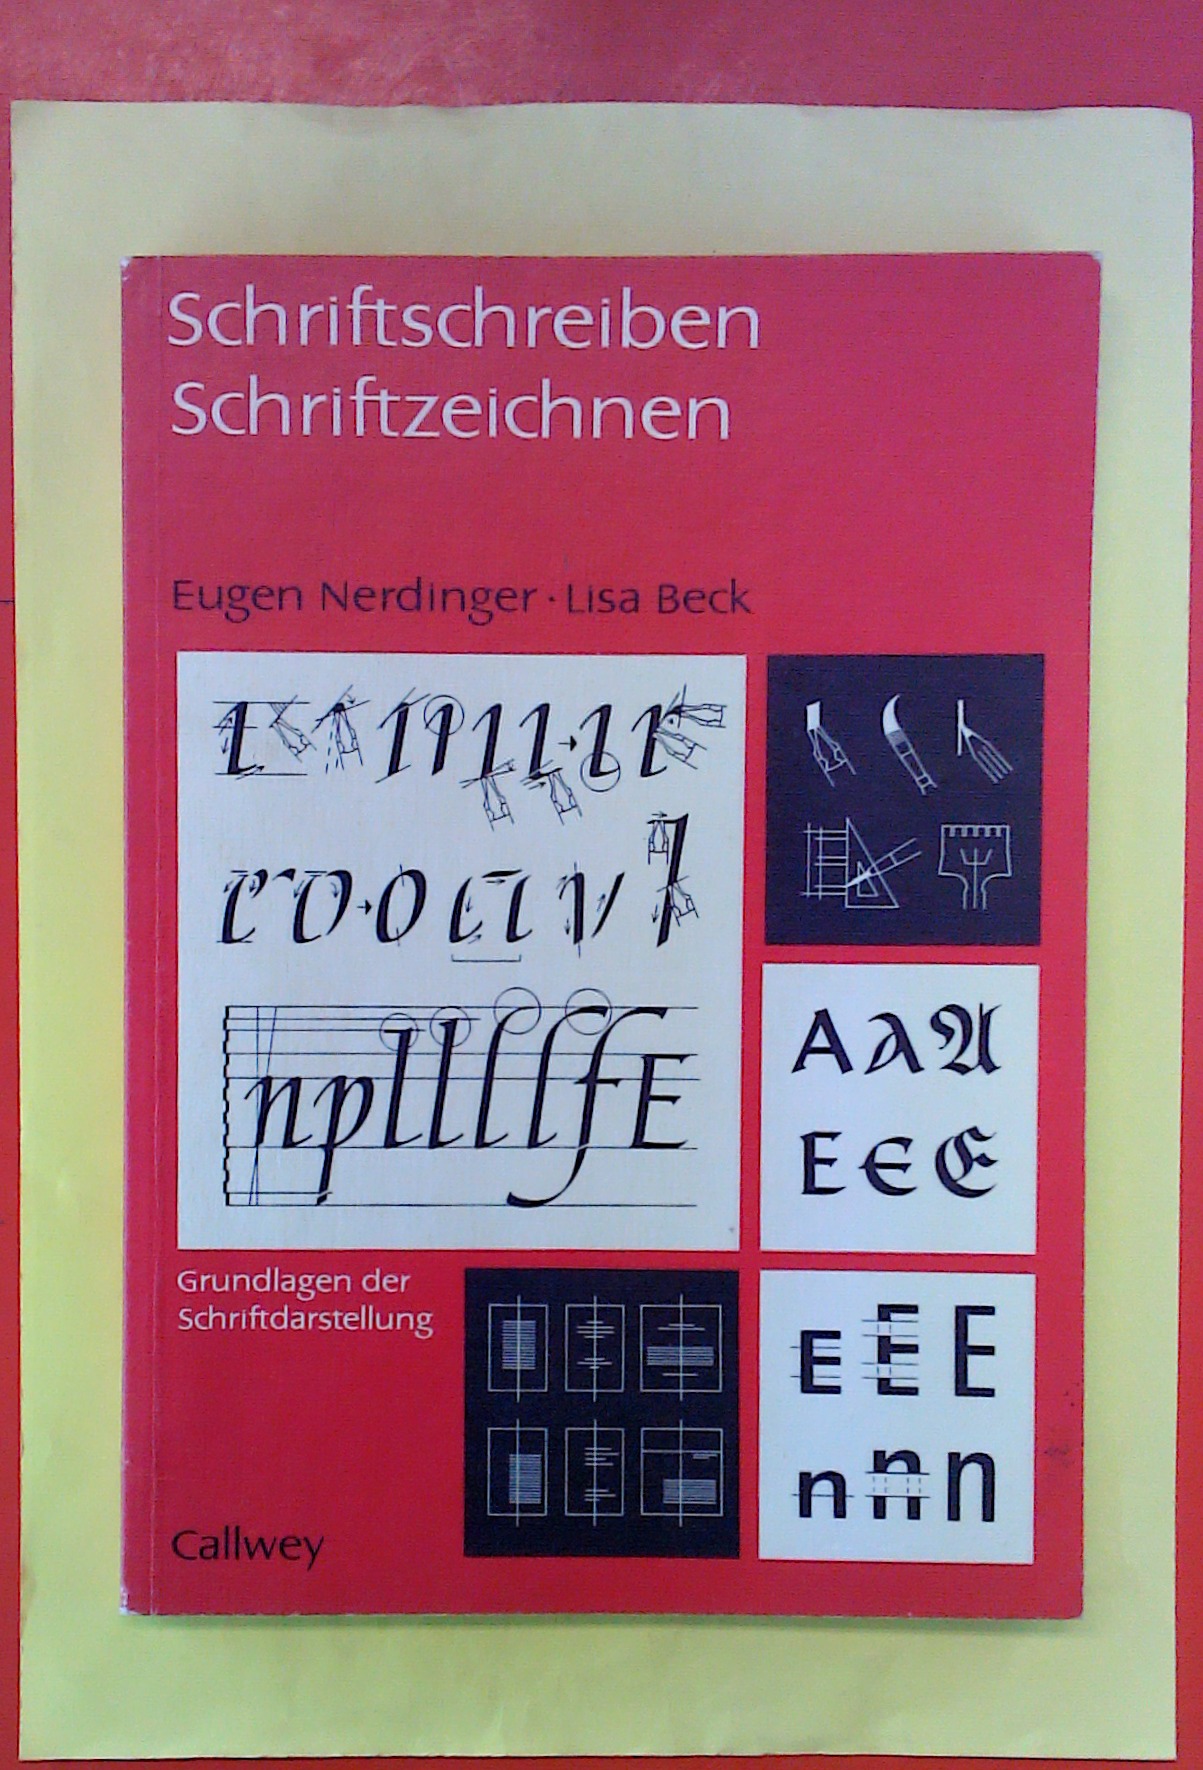 Schriftschreiben / Schriftzeichnen - Grundlagen der Schriftdarstellung (8. Auflage) - Eugen Nerdinger / Lisa Beck